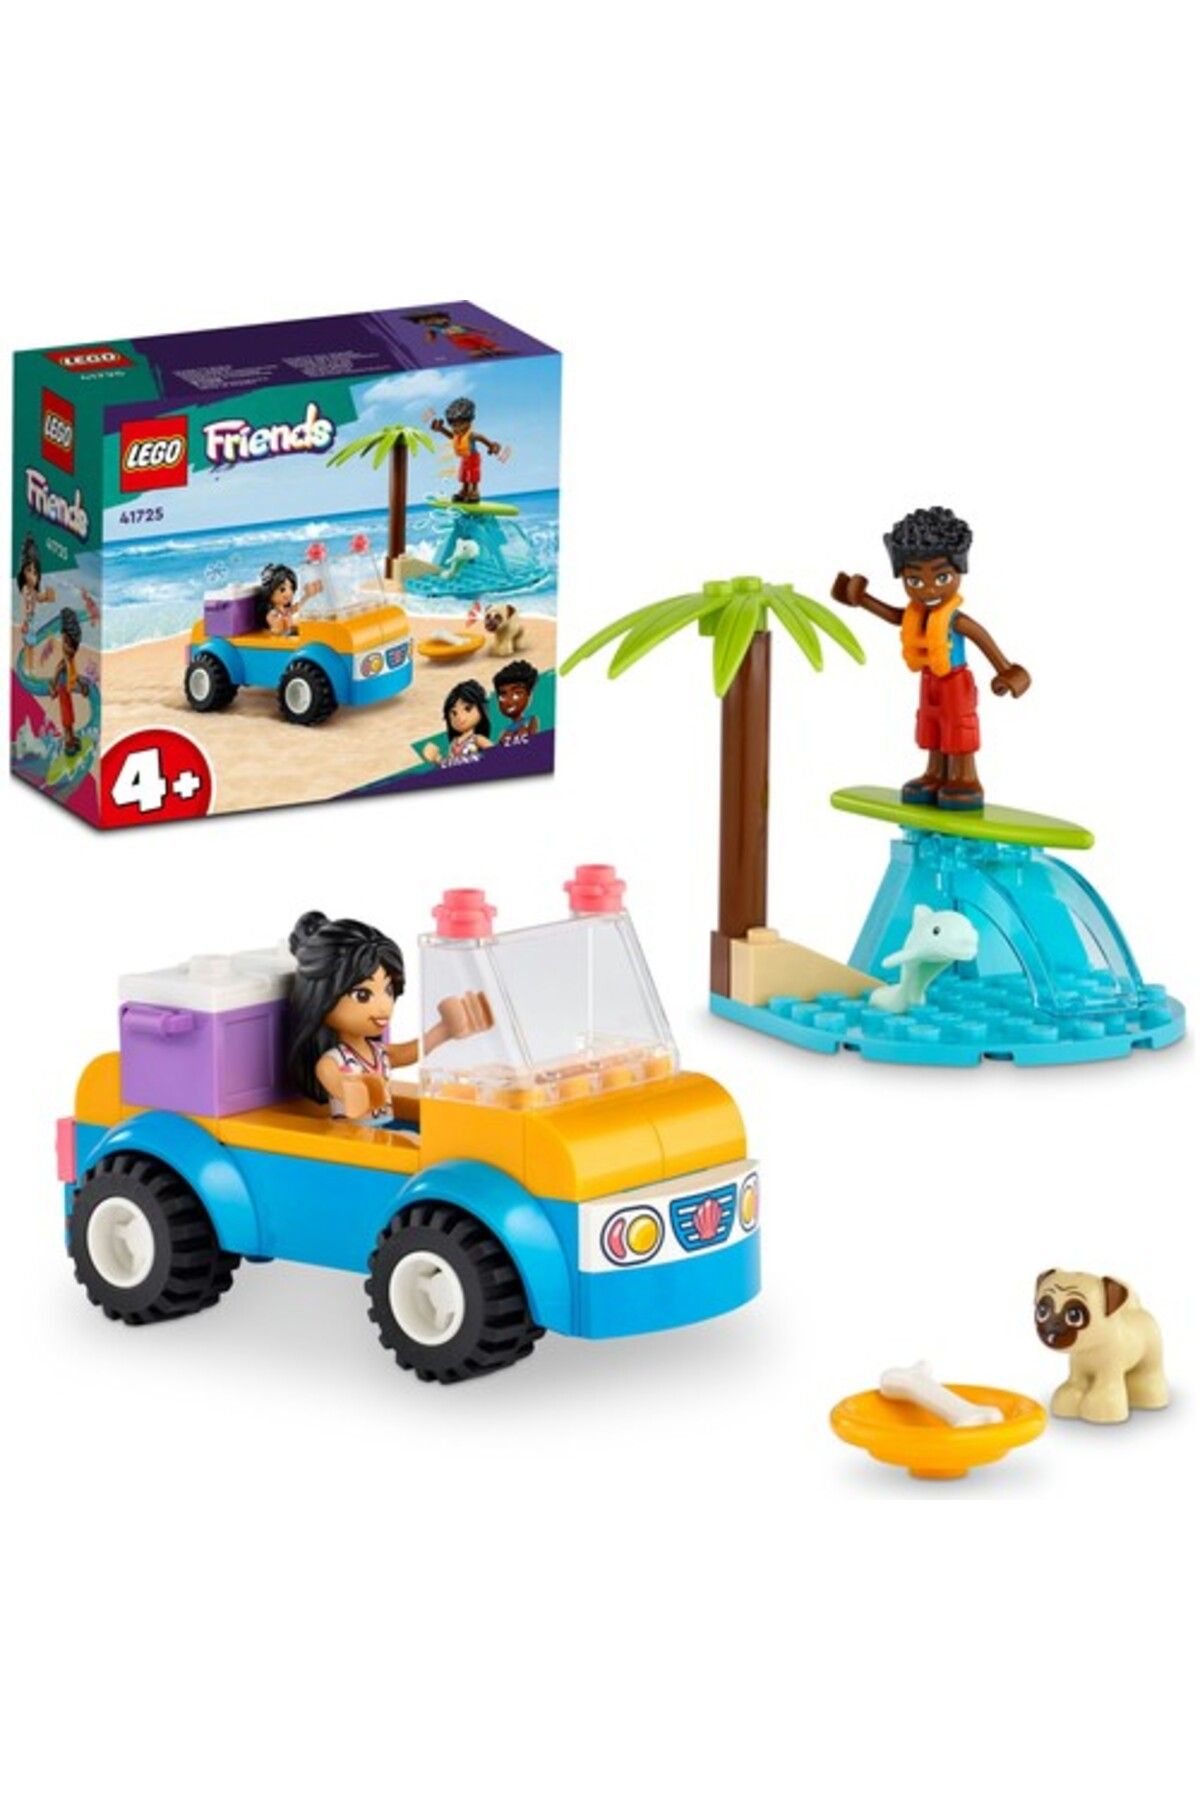 LEGO Friends Plaj Arabası Eğlencesi 41725 Oyuncak Yapım Seti (61 PARÇA)